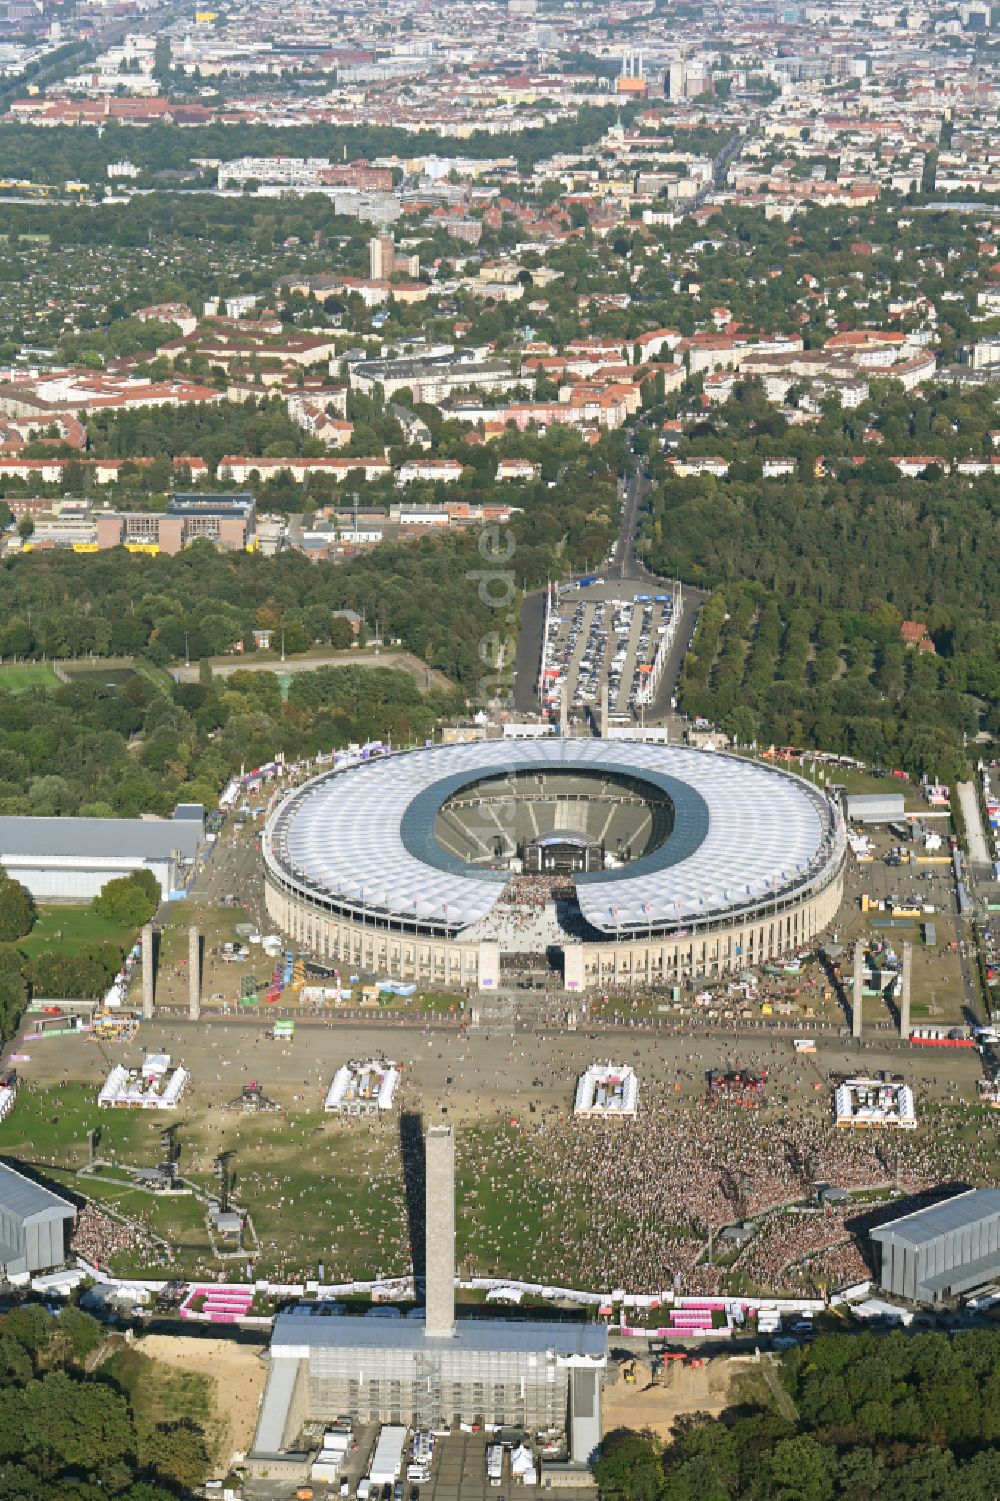 Berlin aus der Vogelperspektive: Festival Lollapalooza Veranstaltung in der Arena des Stadion Olympiastadion in Berlin